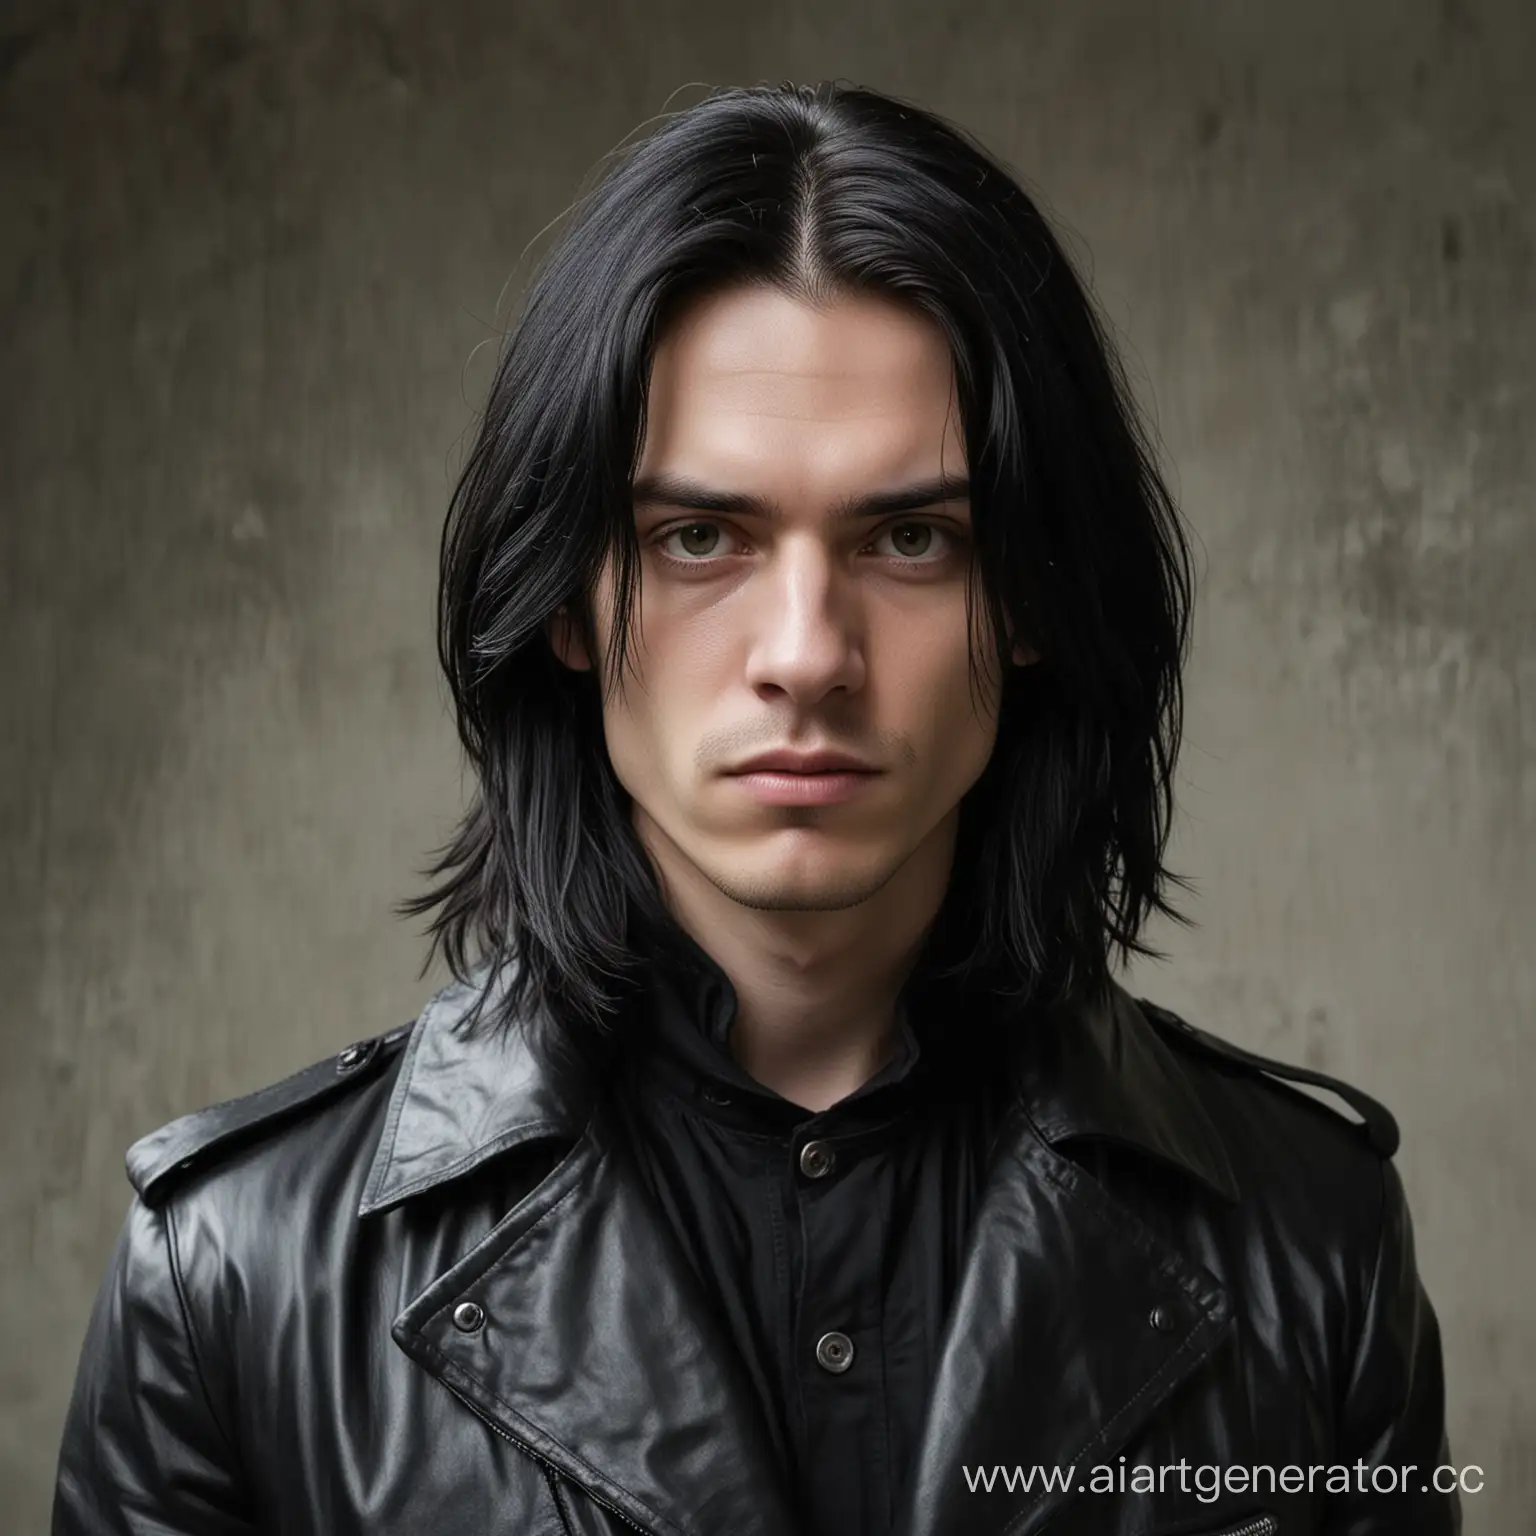 Портрет молодого человека с длинными чёрными волосами. Лицо худое, бледное, мрачное, тяжёлый взгляд. Одет в чёрный кожаный плащ.